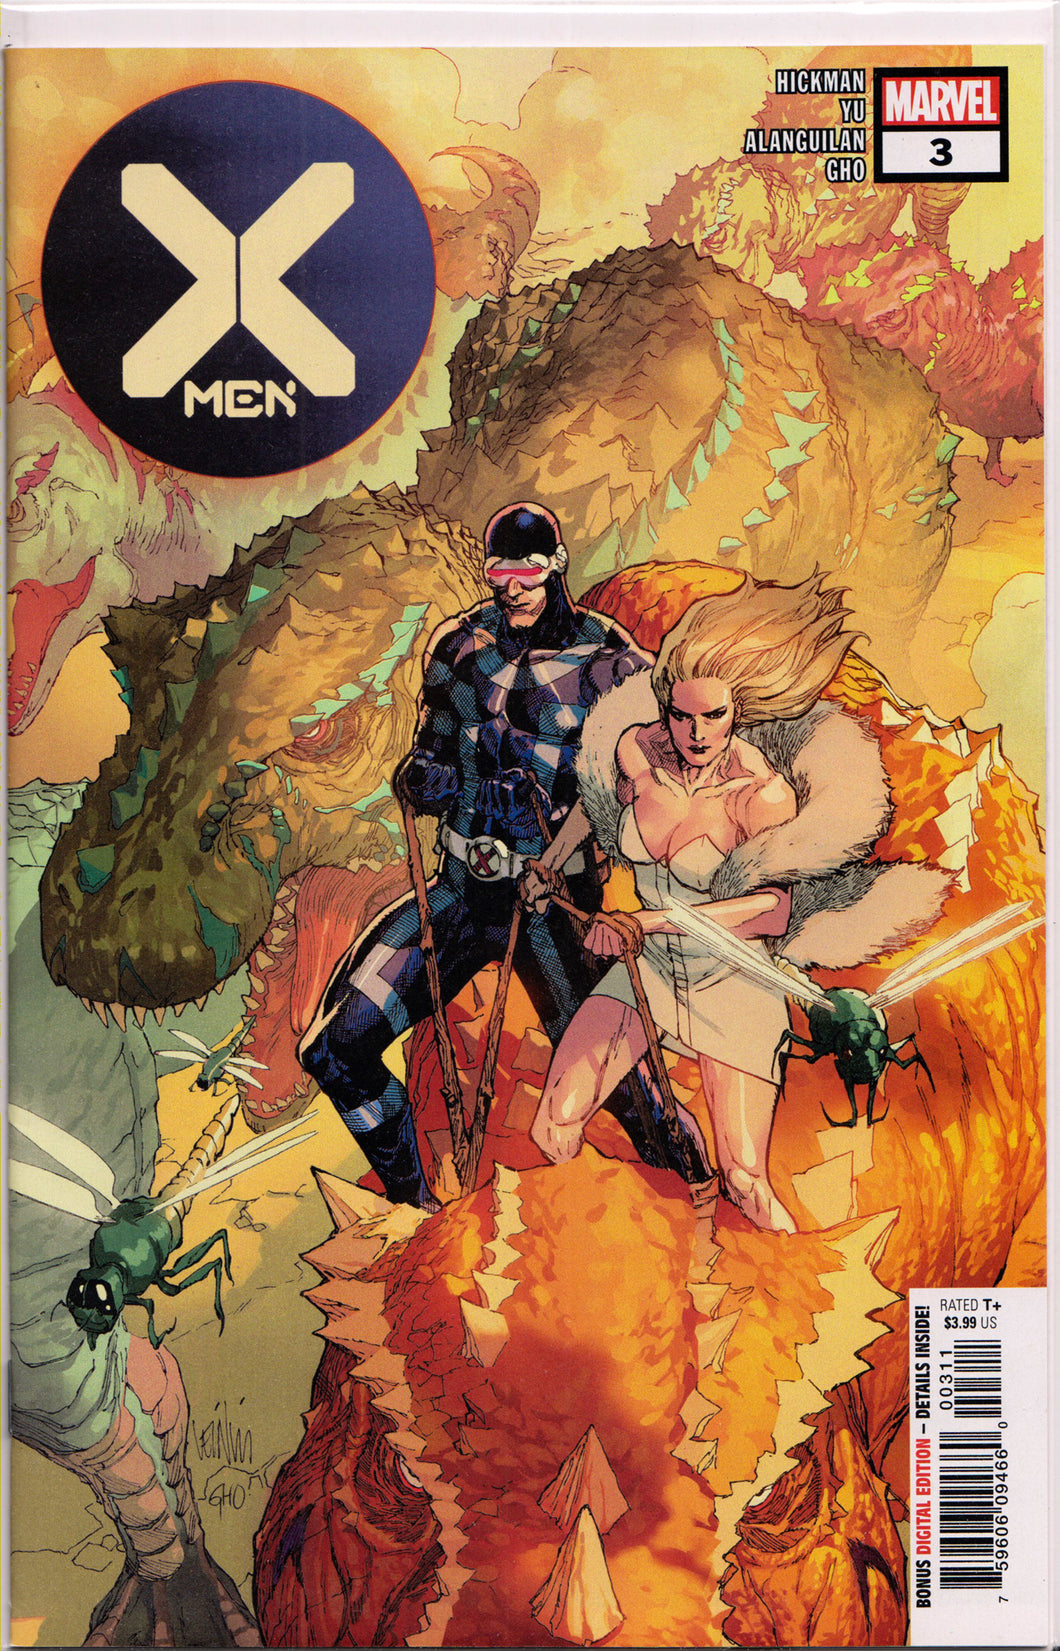 X-MEN #3 (1ST PRINT) COMIC BOOK ~ Marvel Comics